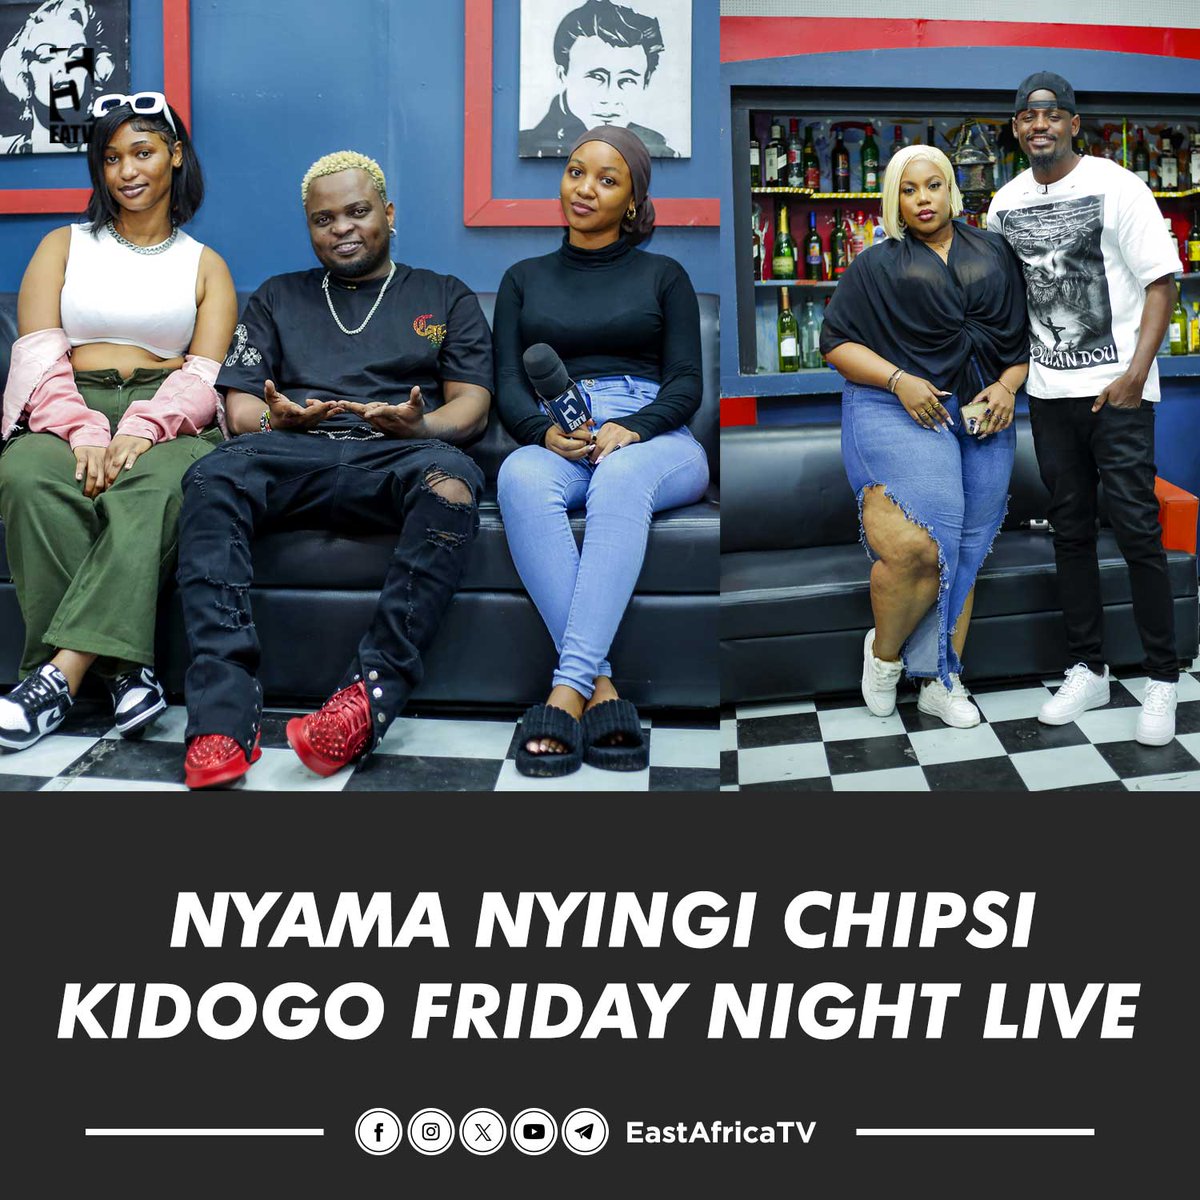 Nyama Nyingi Chipsi kidogo ndani ya #FridayNightLive ya #EastAfricaTV na #EastAfricaRadio, kama huna 'D' mbili hauwezi kuelewa 😀

#FridayNightLive #FNL